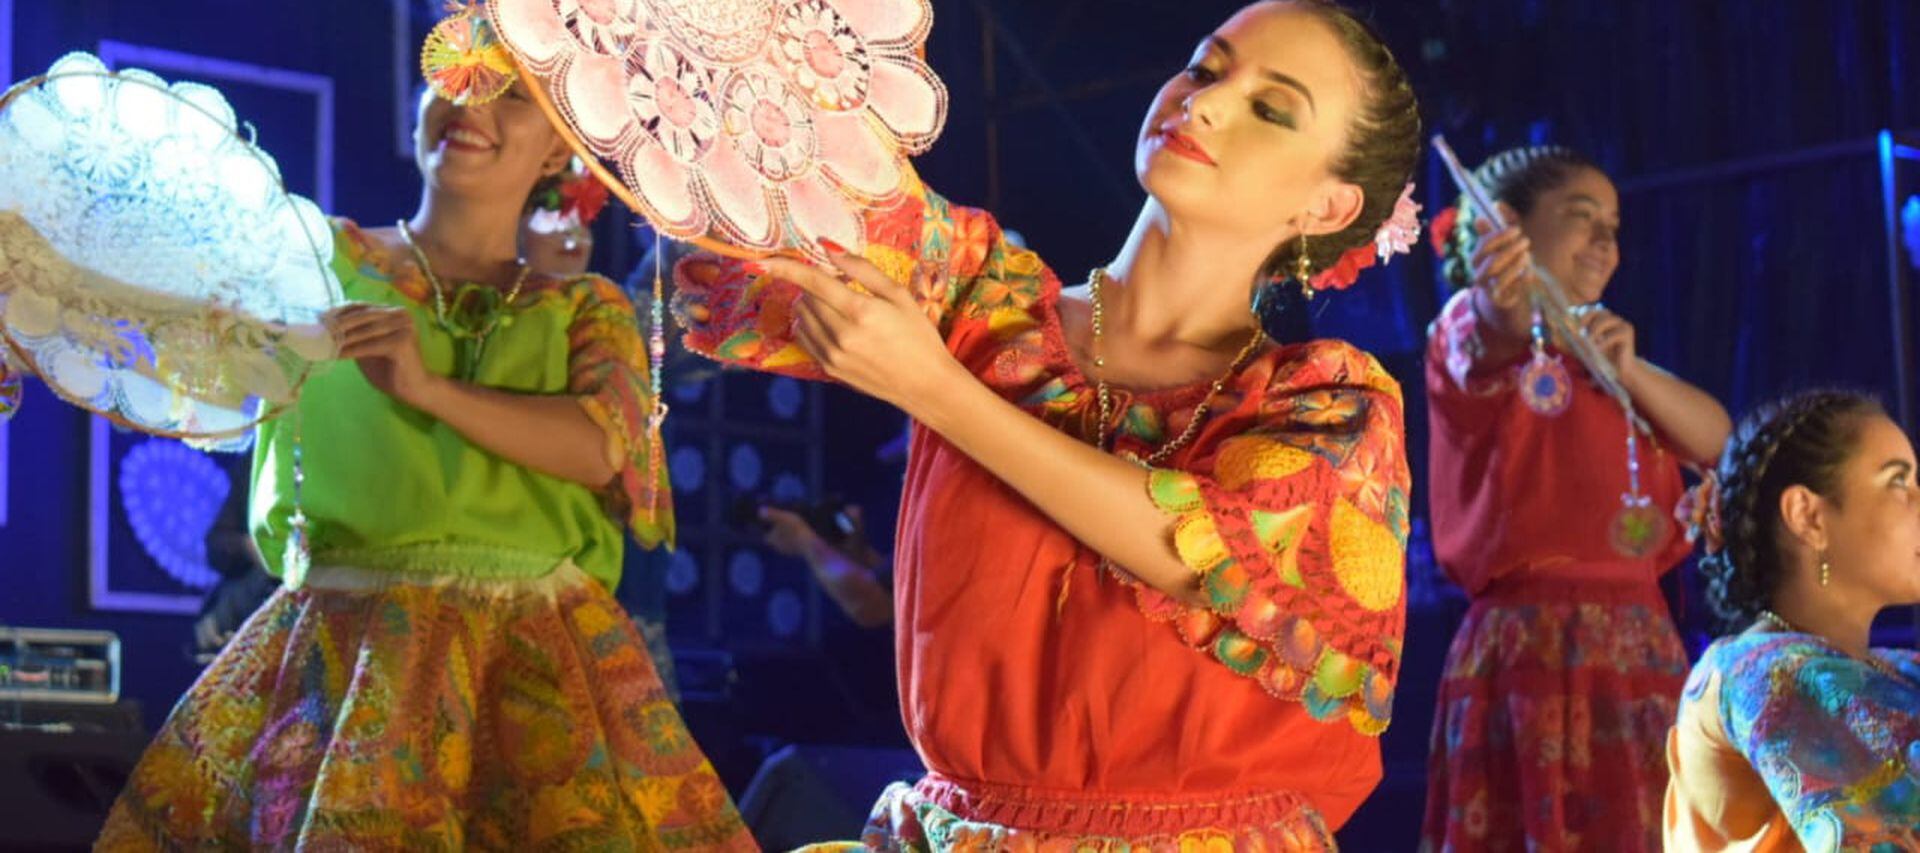 El Festival Nacional del Ñandutí se viene realizando en la Ciudad de Itauguá desde hace más de cuatro décadas. Tiene sus raíces en la “Peñas Luneras”, organizadas en el año 1969.